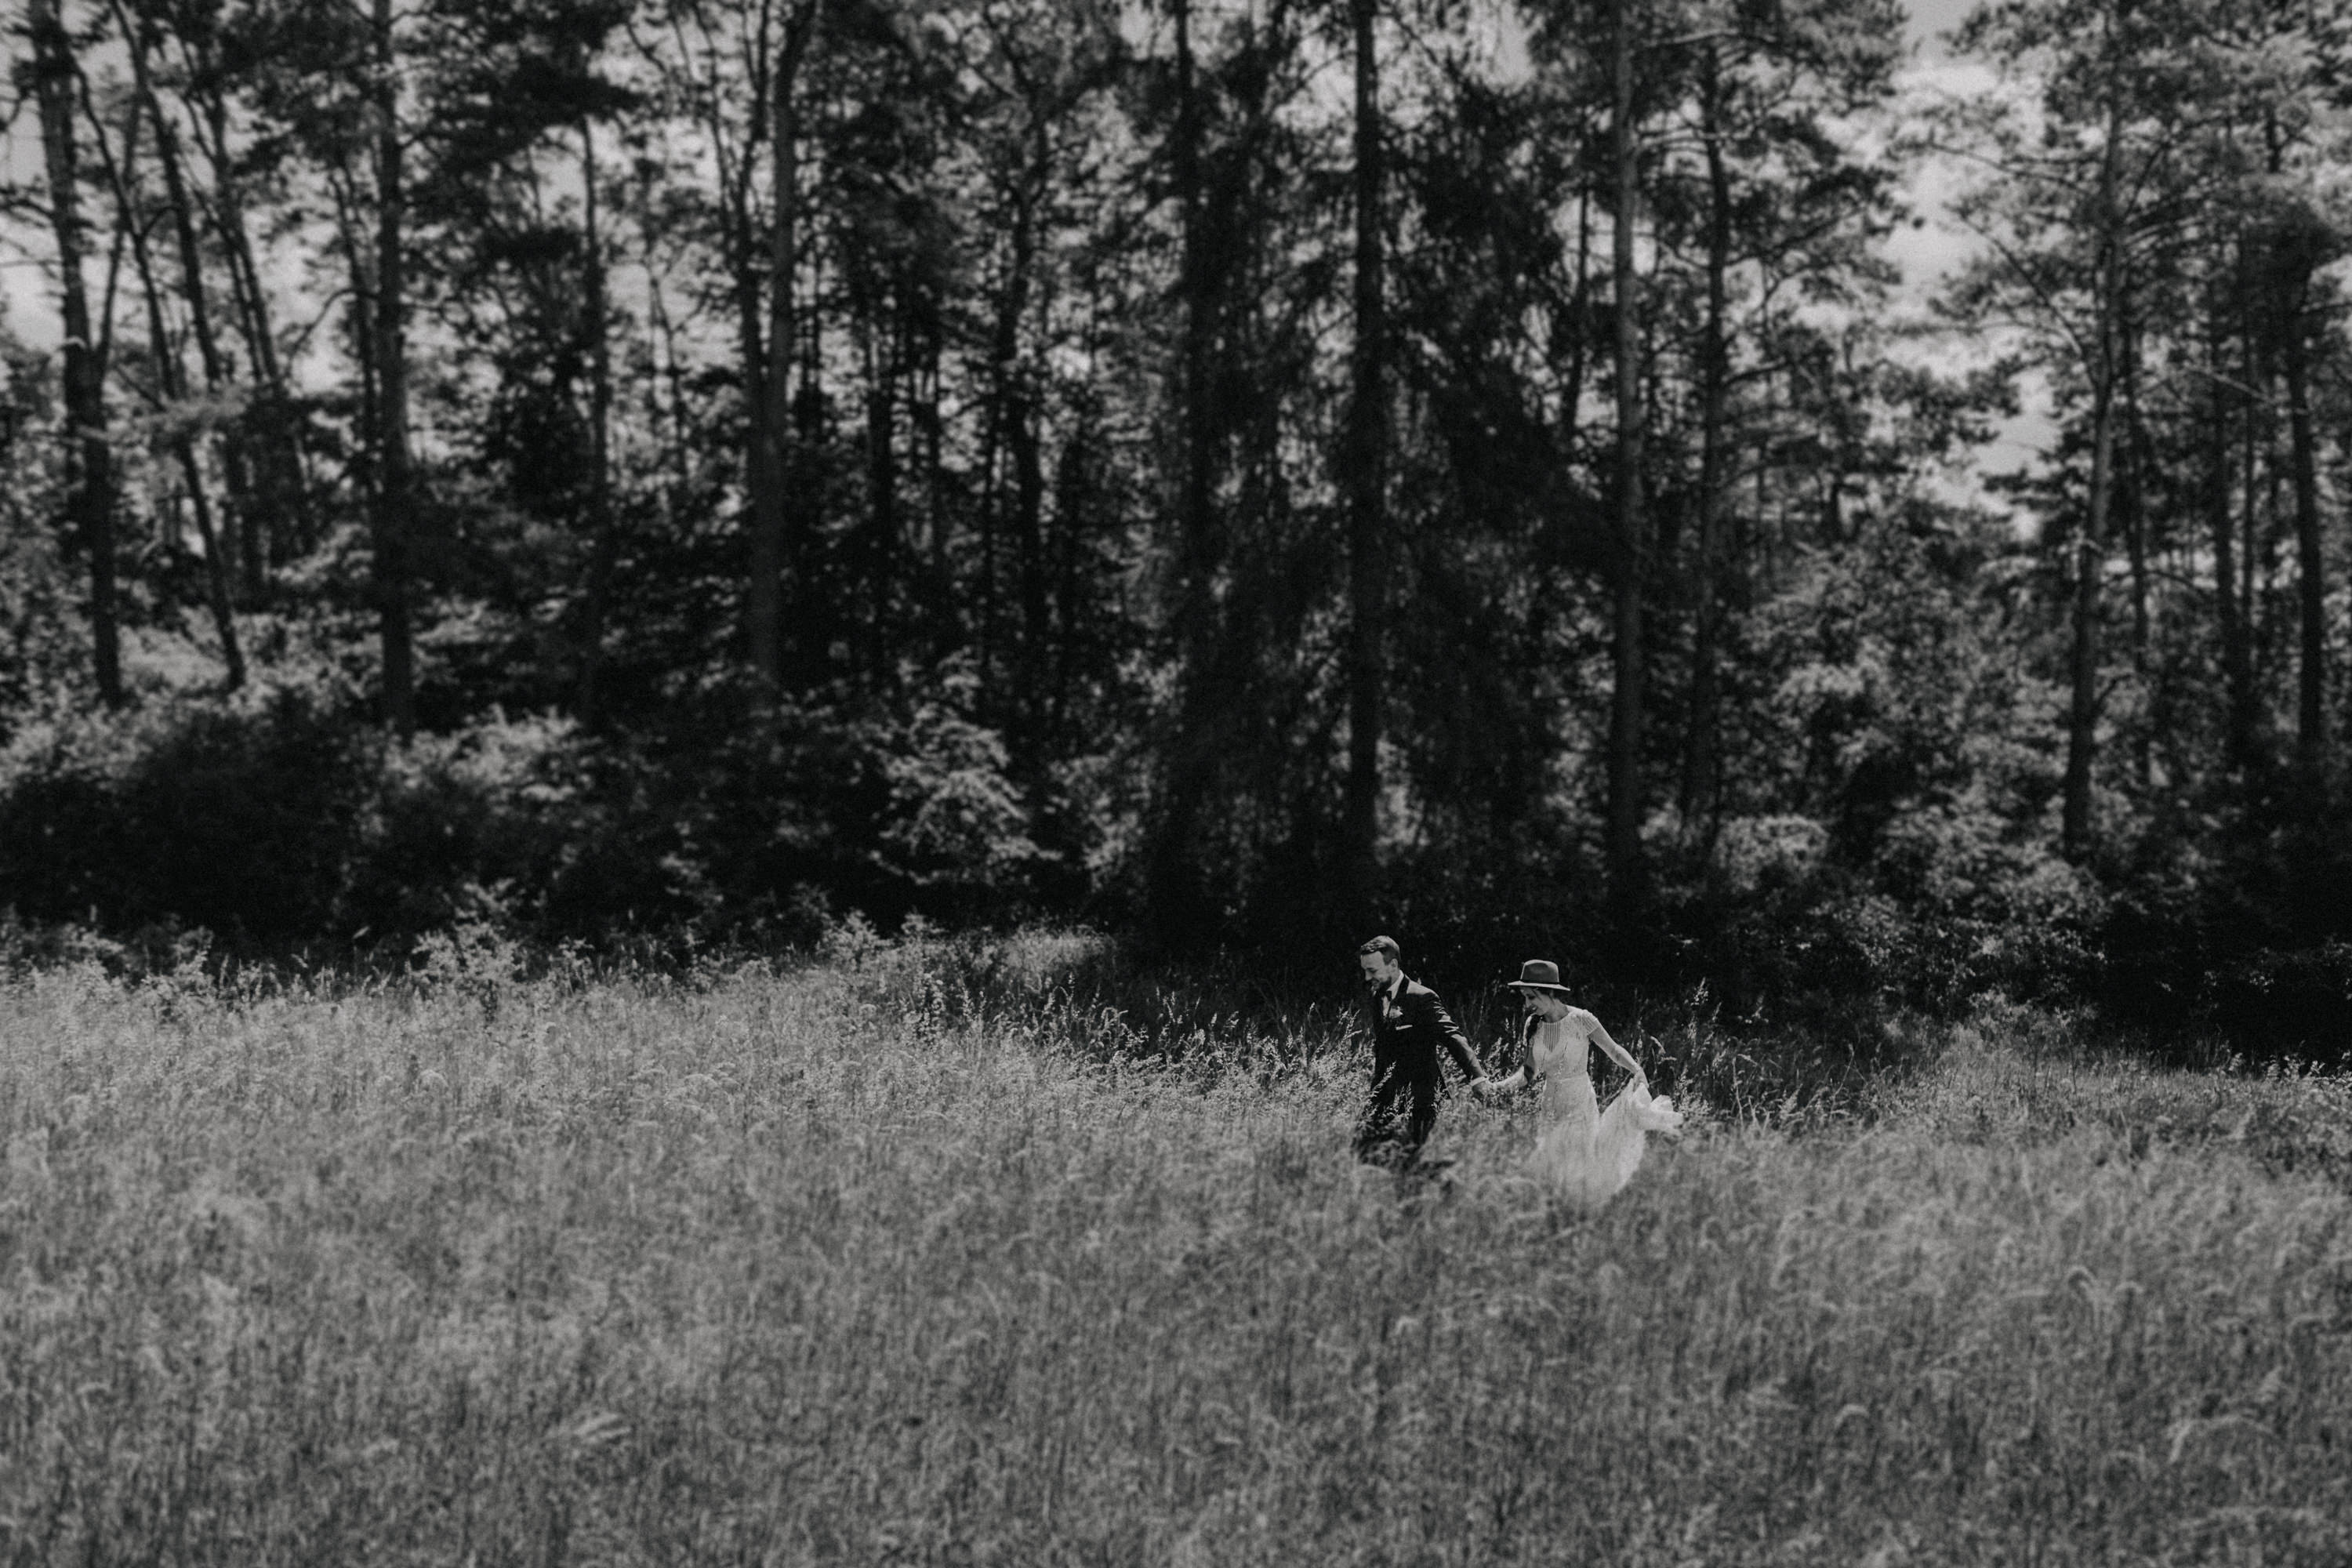 Dieses Foto ist Teil einer Hochzeitsreportage, die von den Hochzeitsfotografen Tom und Lia aus Potsdam aufgenommen wurde. Zu sehen ist das Brautpaar während des Brautpaar-Shootings in einem satt grünem Feld bei strahlendem Sonnenschein.